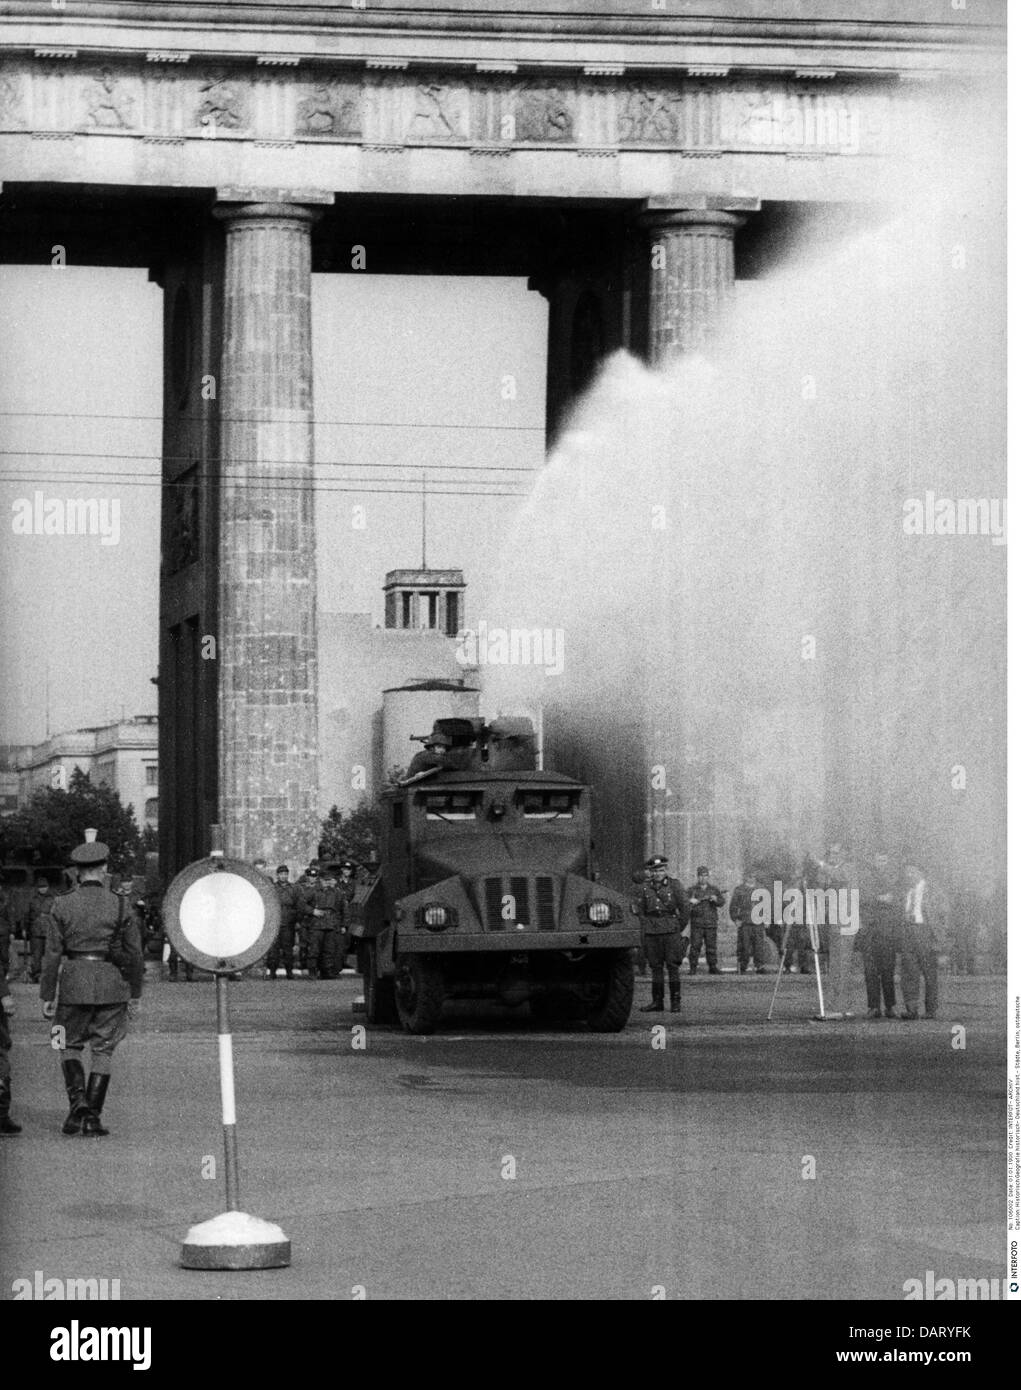 Geographie / Reisen, Deutschland, Berlin, Mauer, Bau, DDR Polizei schließt Brandenburger Tor, 14.8.1961, zusätzliche-Rechte-Clearences-nicht verfügbar Stockfoto